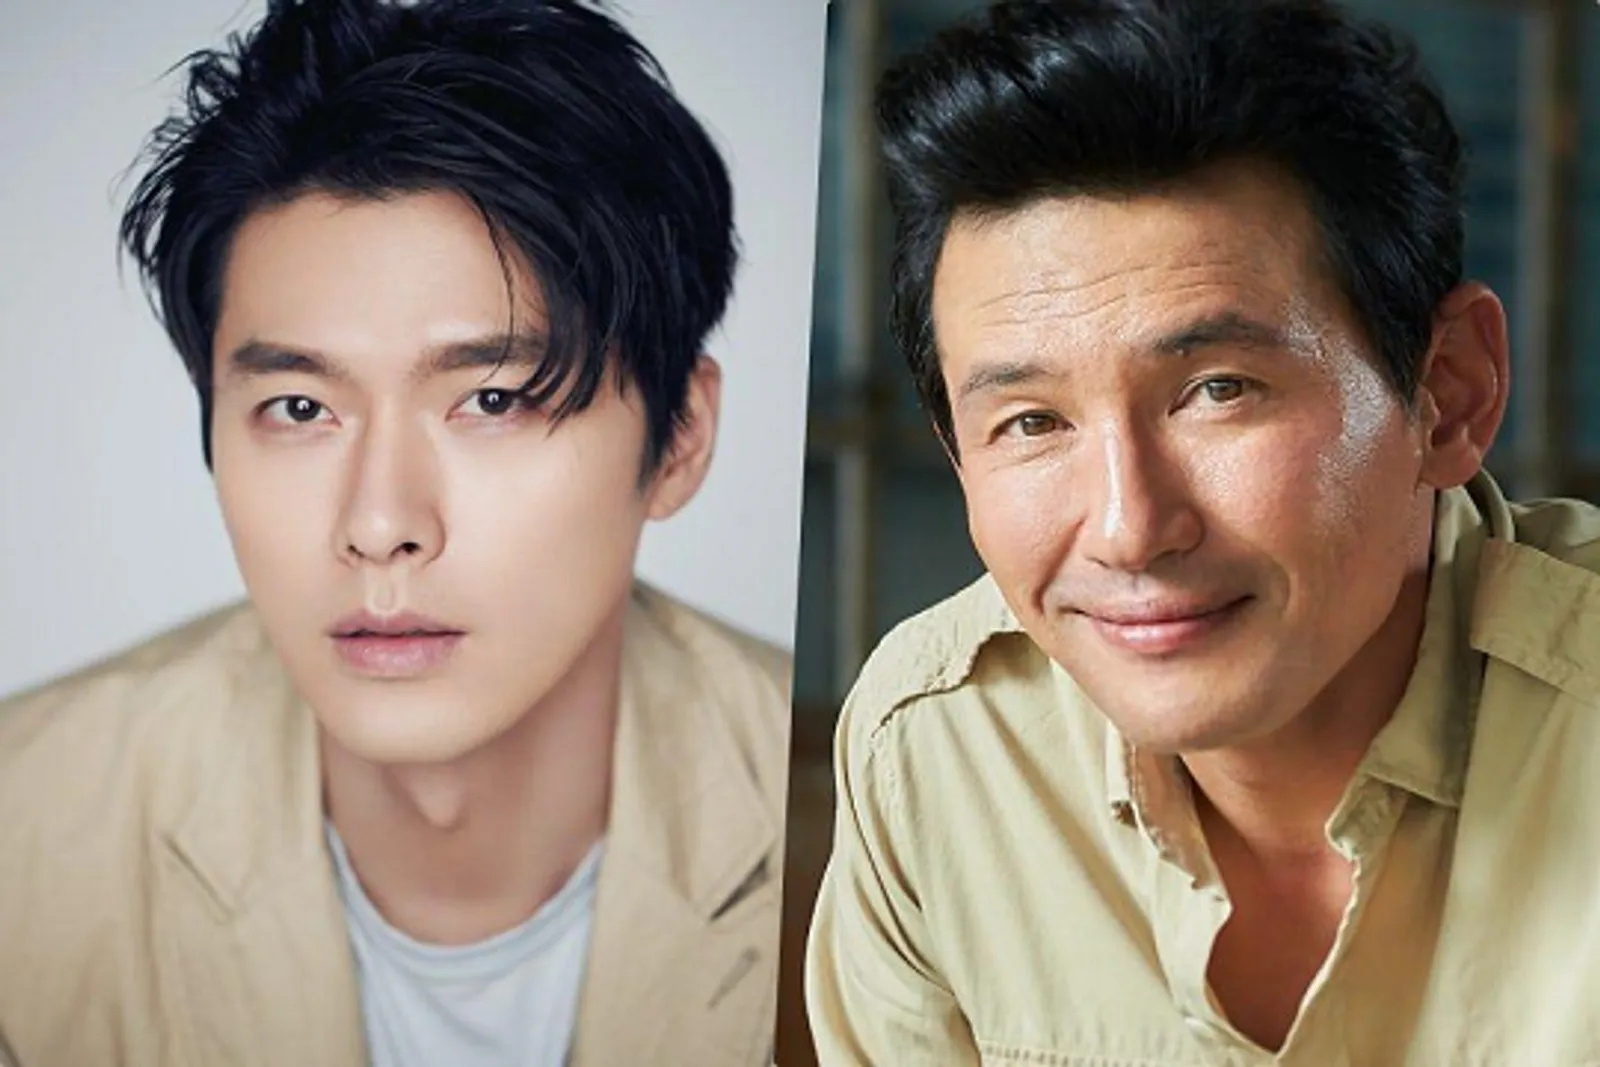 Syuting di Luar Negeri, Ini 5 Fakta Film Terbaru Hyun Bin 'Bargaining'